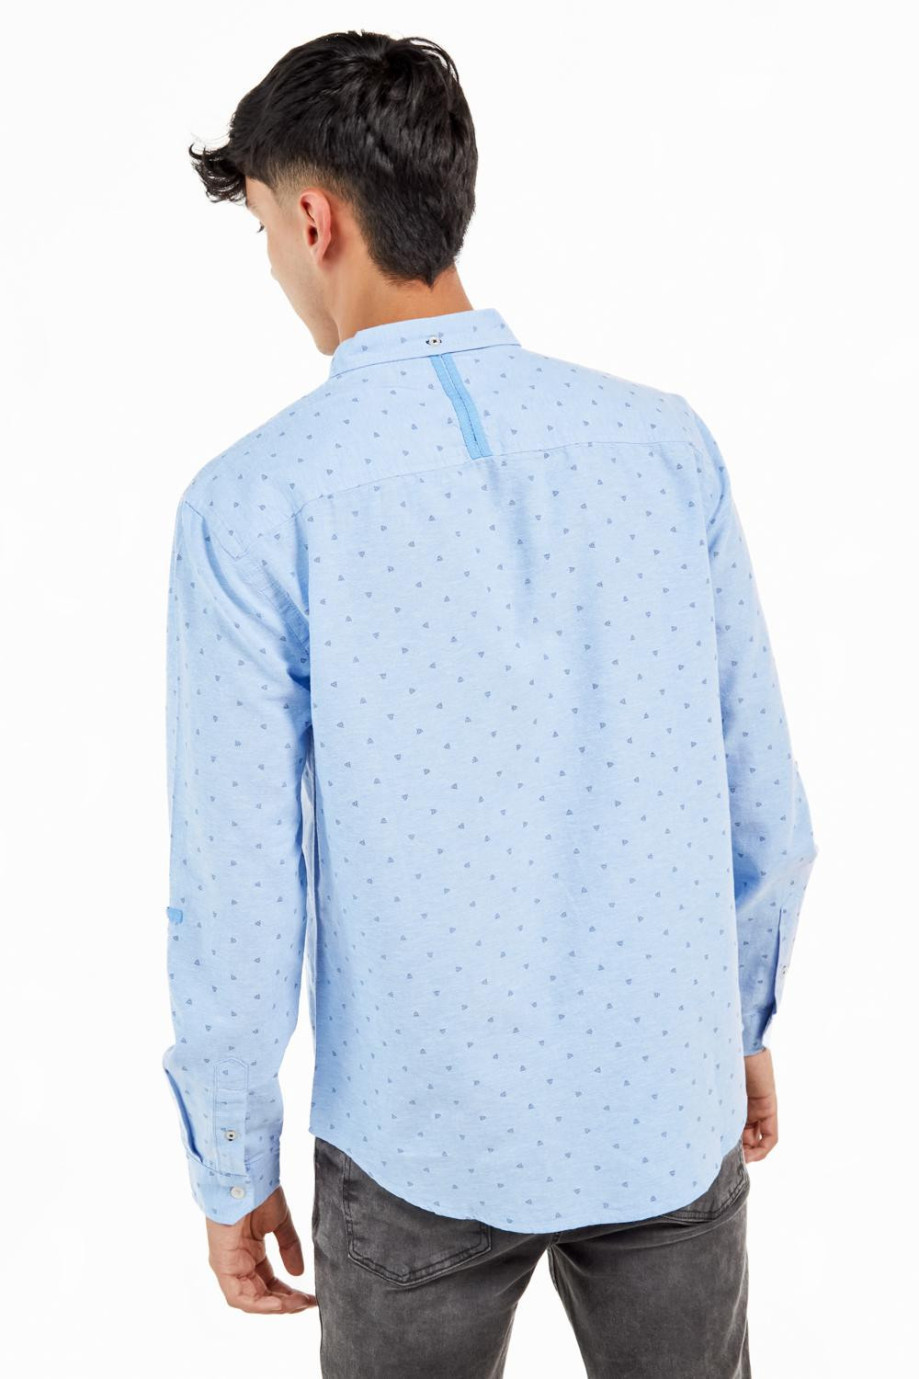 Camisa con cuello button down manga larga con diferentes motivos de estampación.